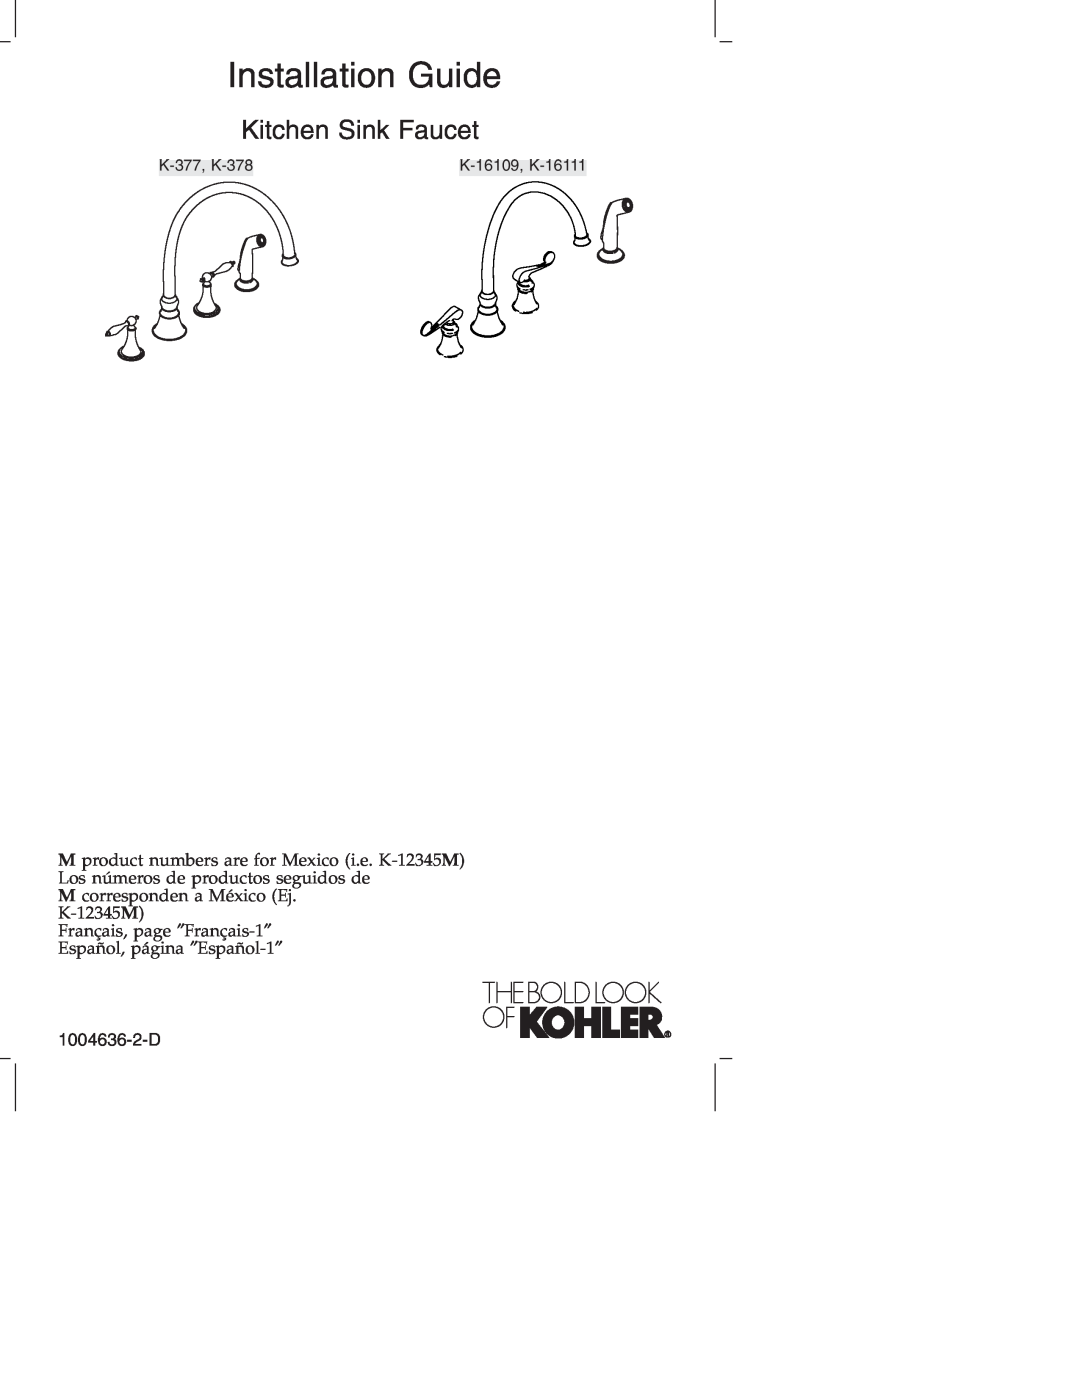 Kohler manual 1004636-2-D, Installation Guide, Kitchen Sink Faucet, K-377, K-378, K-16109, K-16111 